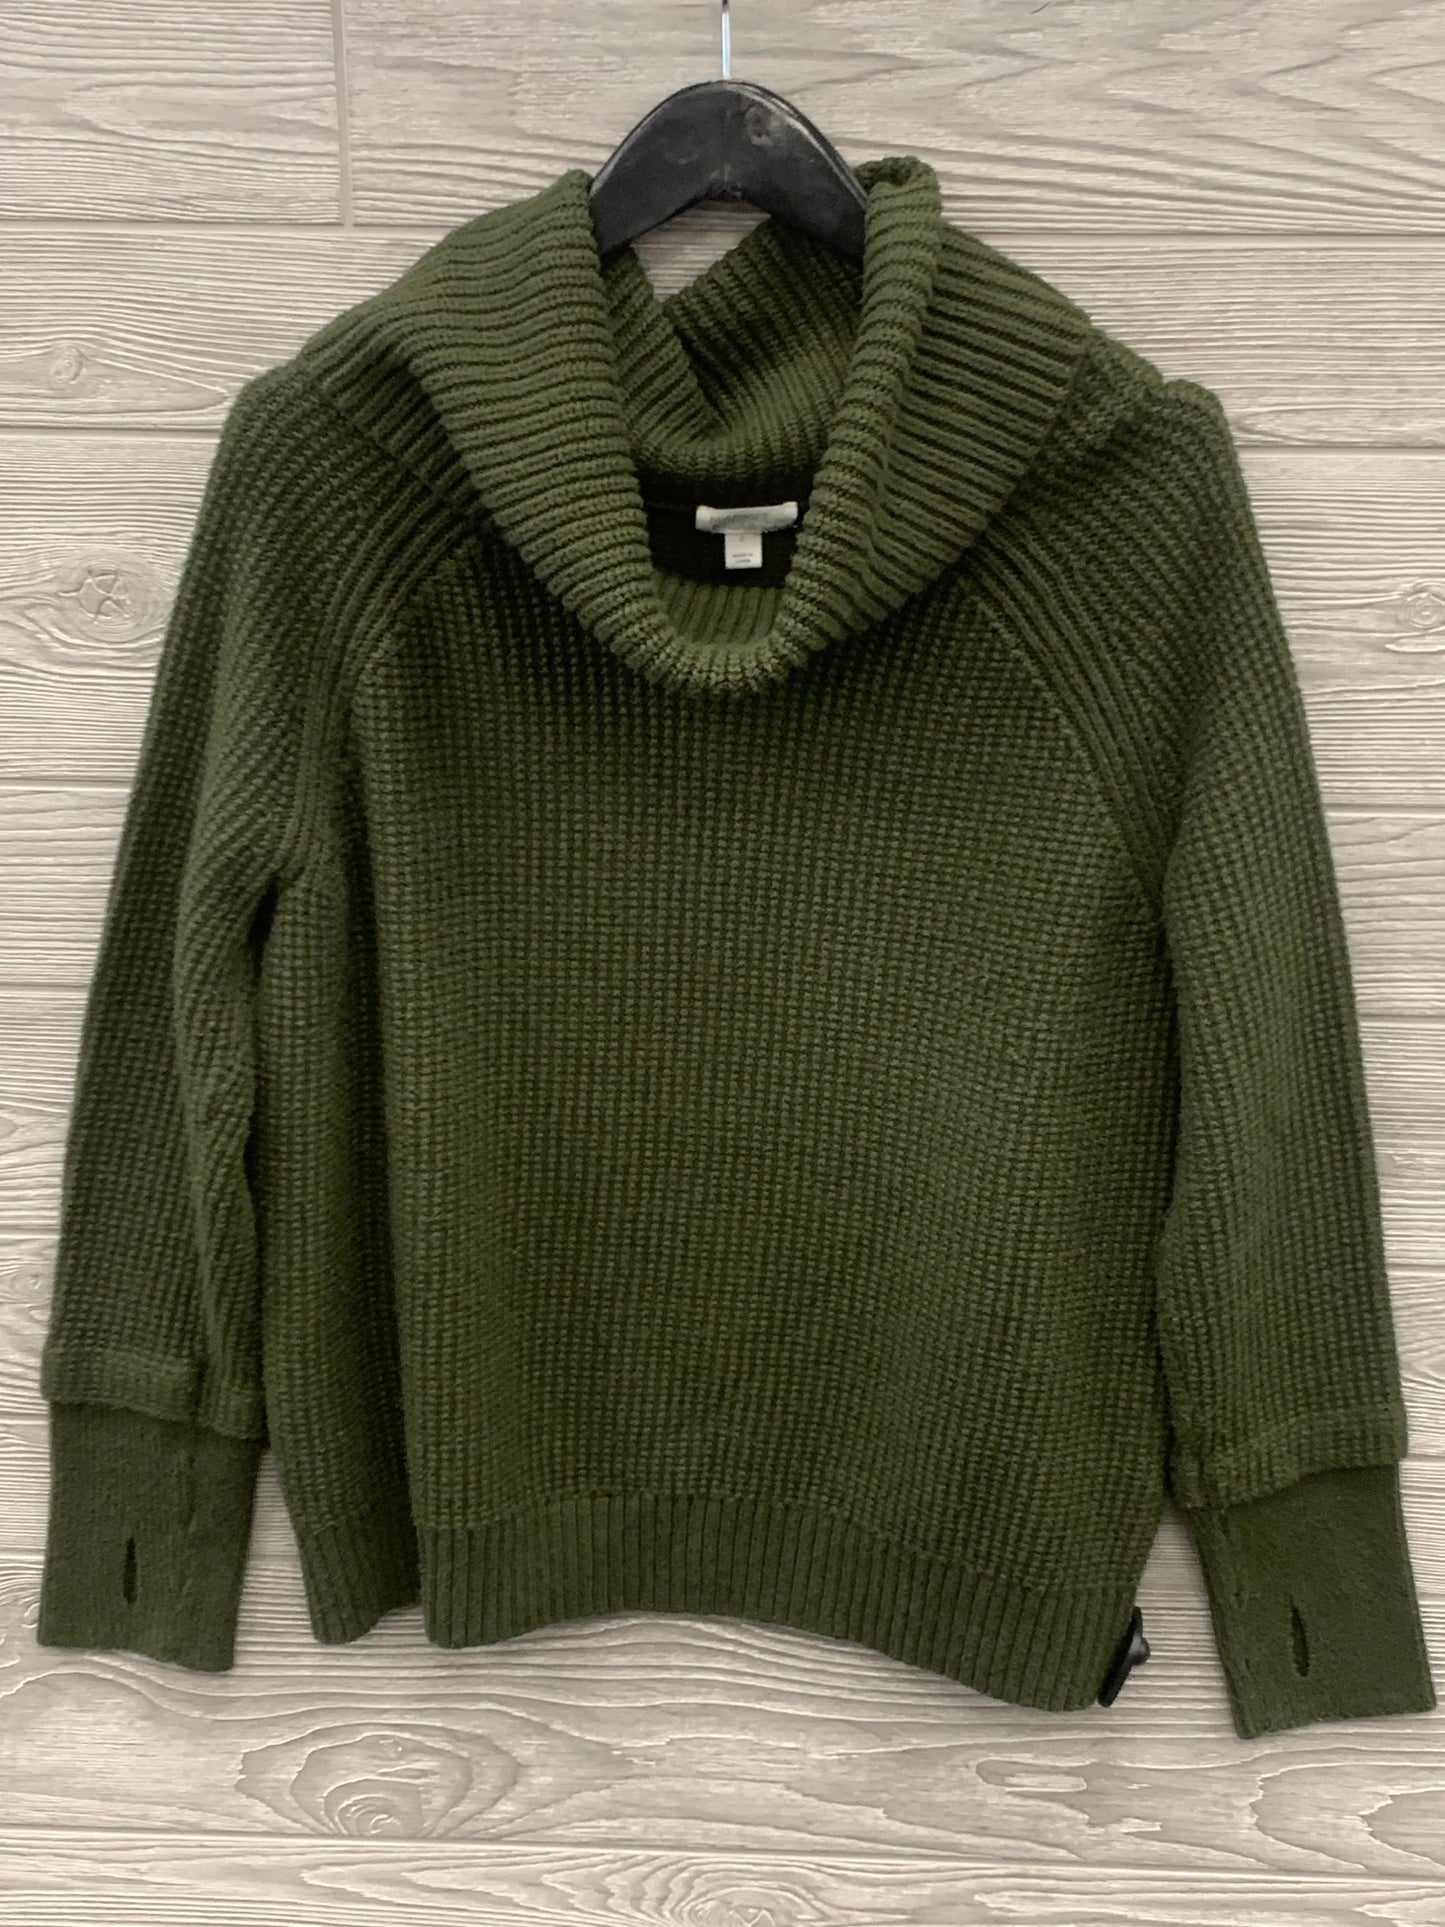 Sweater By Market & Spruce  Size: L